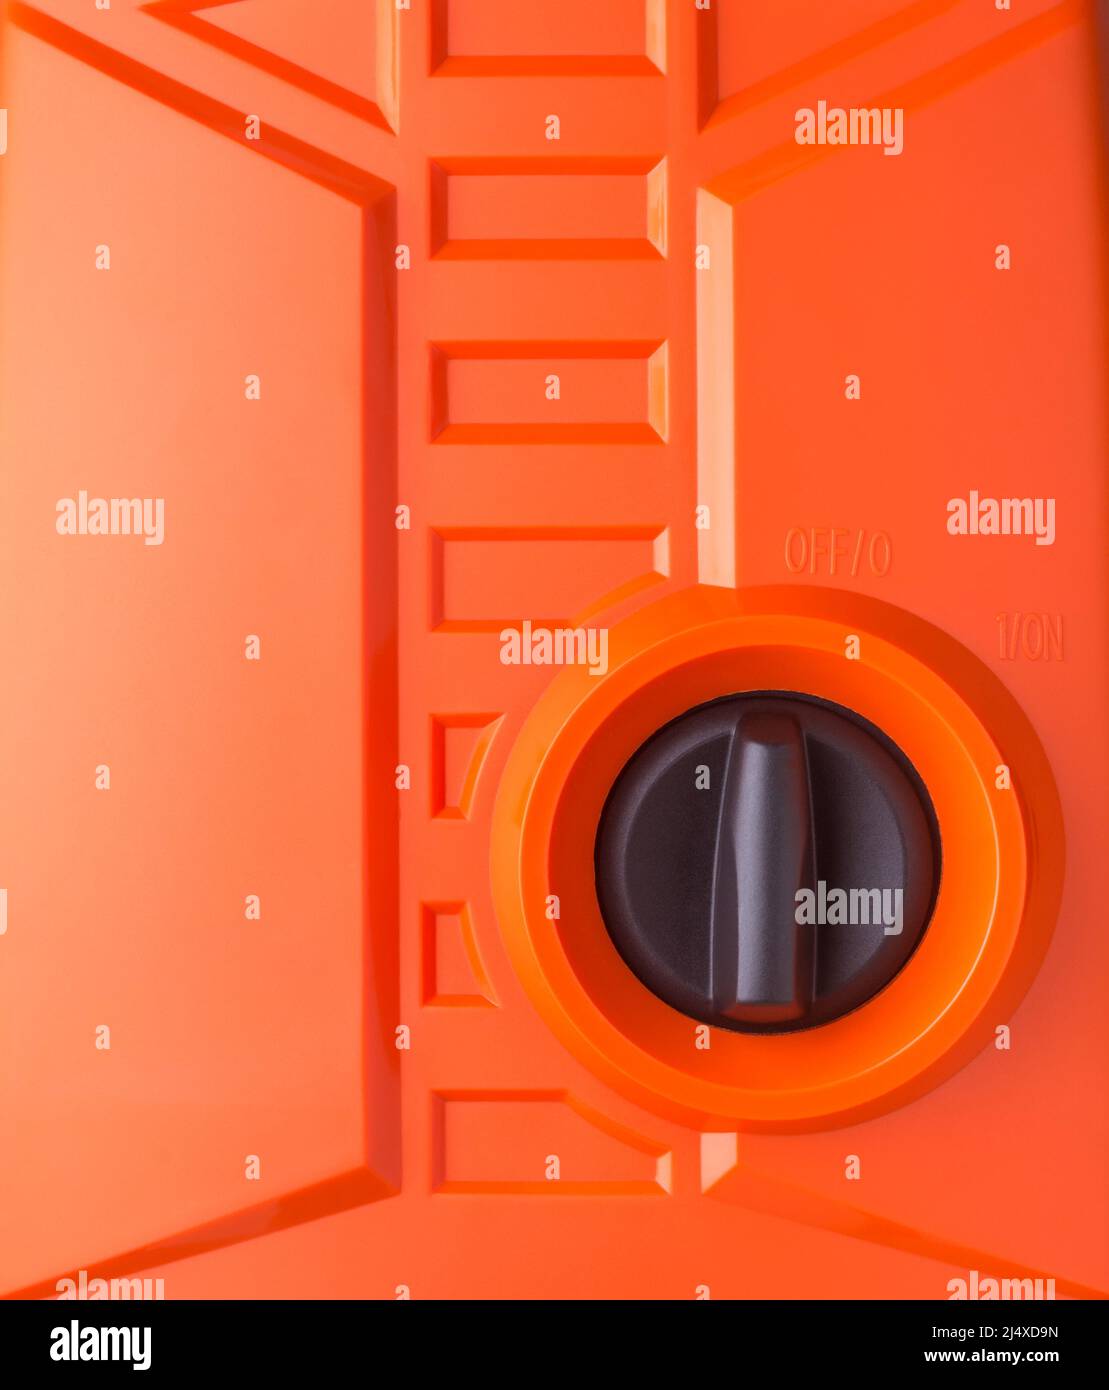 manopola nera interruttore di accensione/spegnimento rotante in plastica con sfondo arancione, funzionamento macchina elettrica concetto con spazio di copia Foto Stock